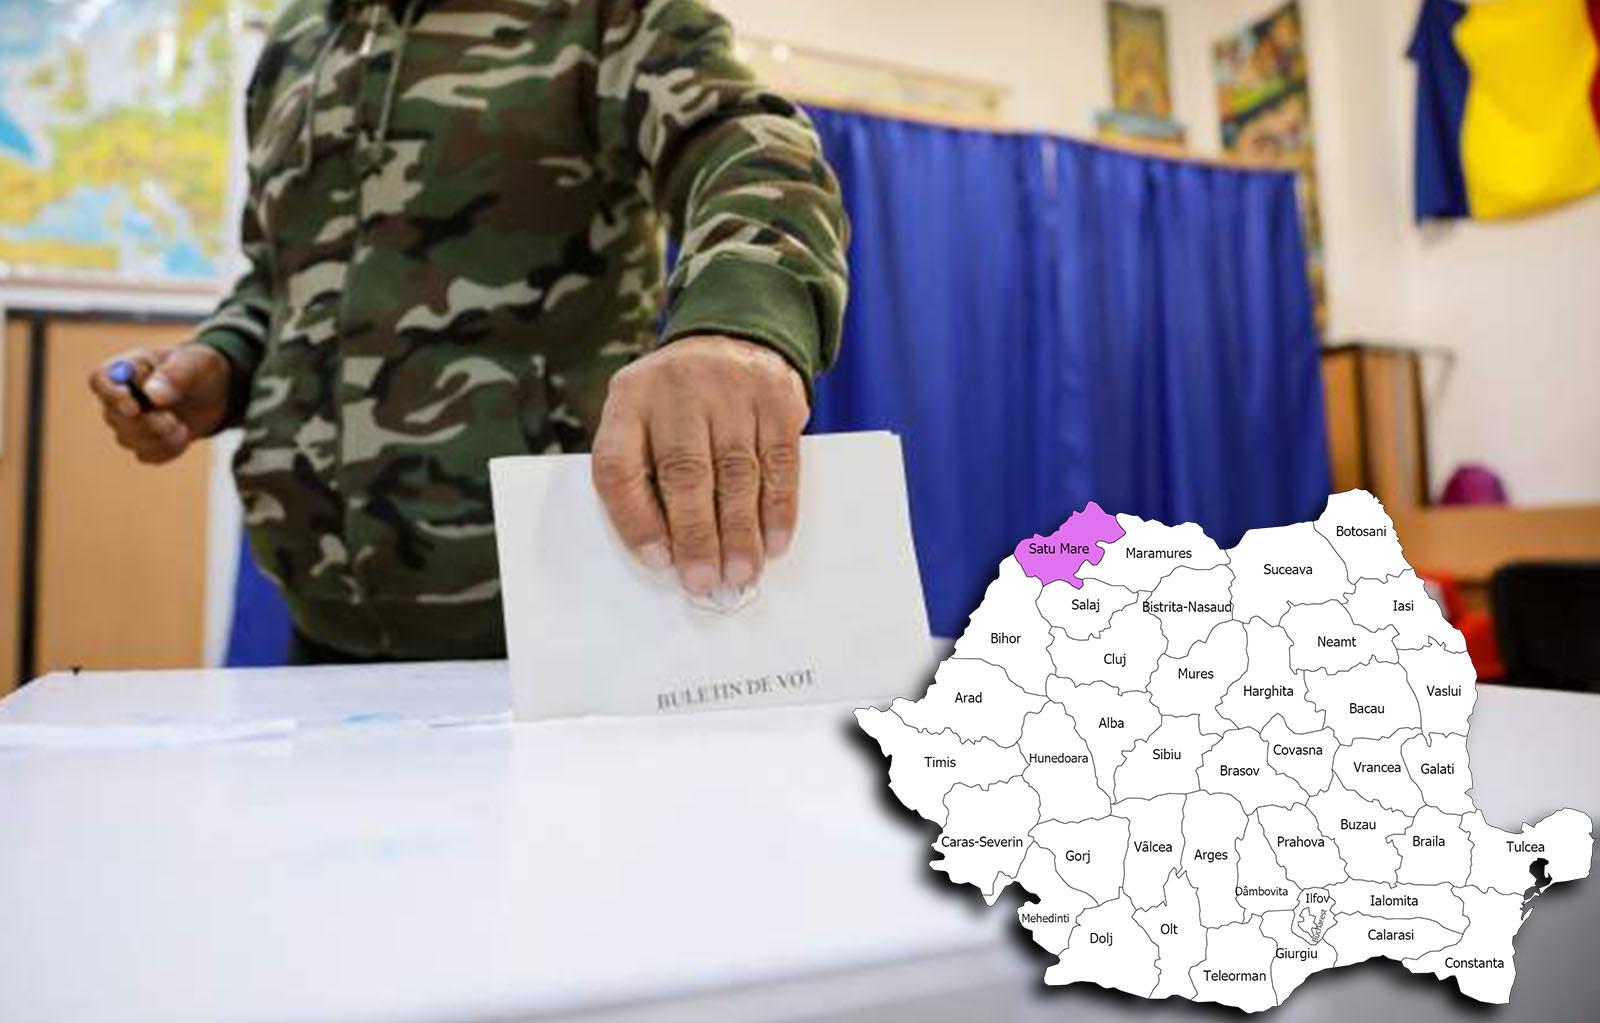 Rezultate alegeri parlamentare 2020 în județul Satu Mare. Cine câștigă alegerile pentru Senat și Camera Deputaților